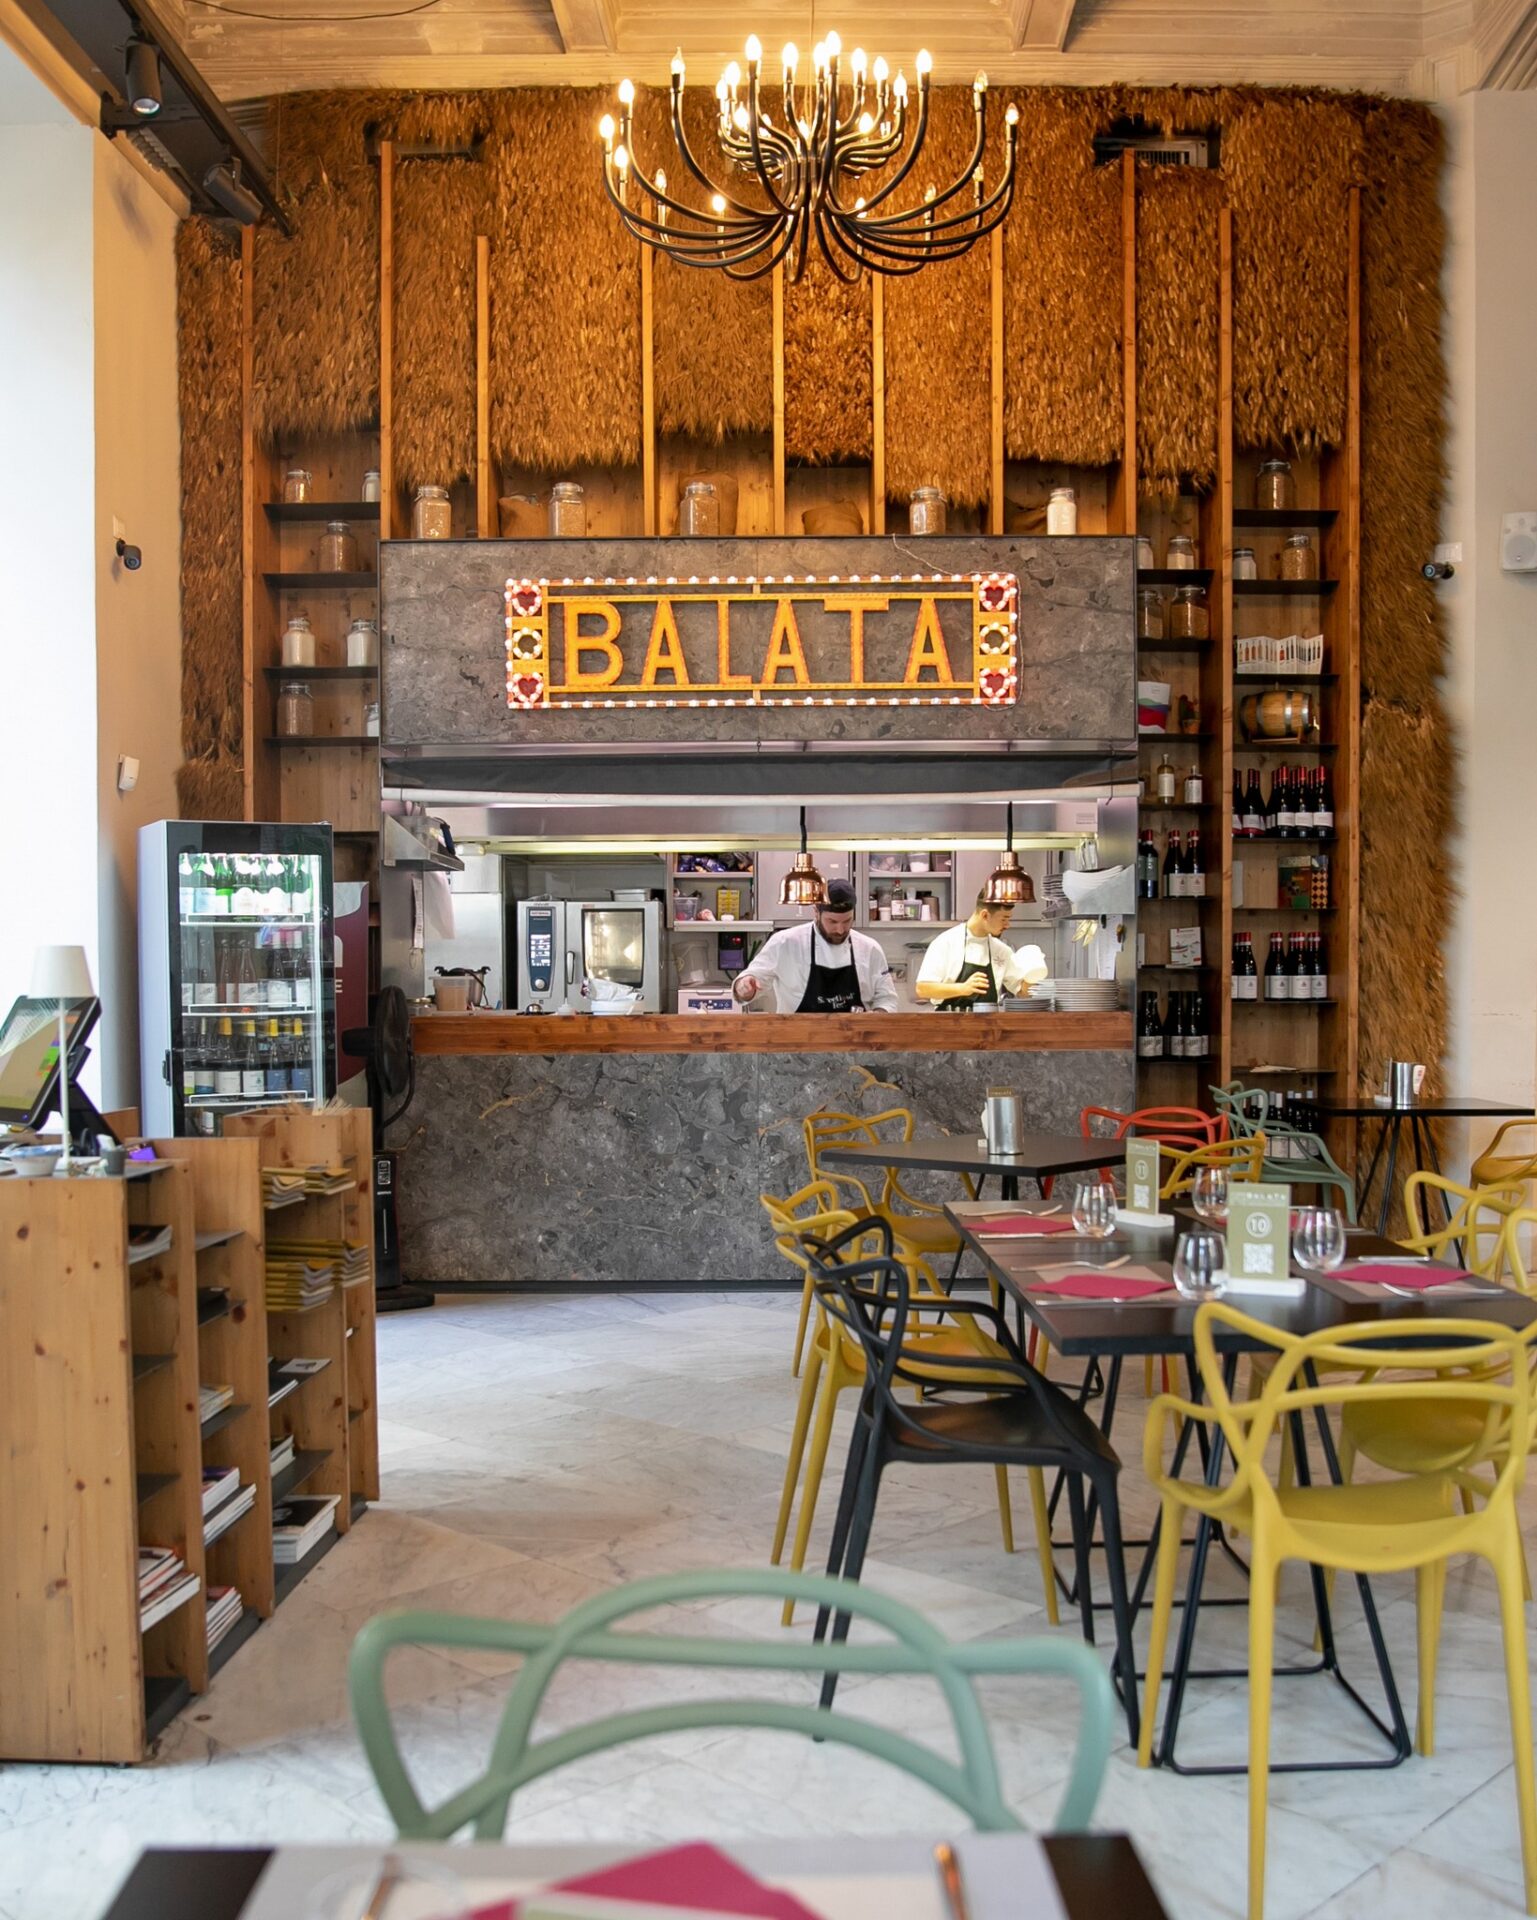 migliori pizzerie economiche a Palermo, Balata Sicilian Experience, Palermo, Interni, Arredamento